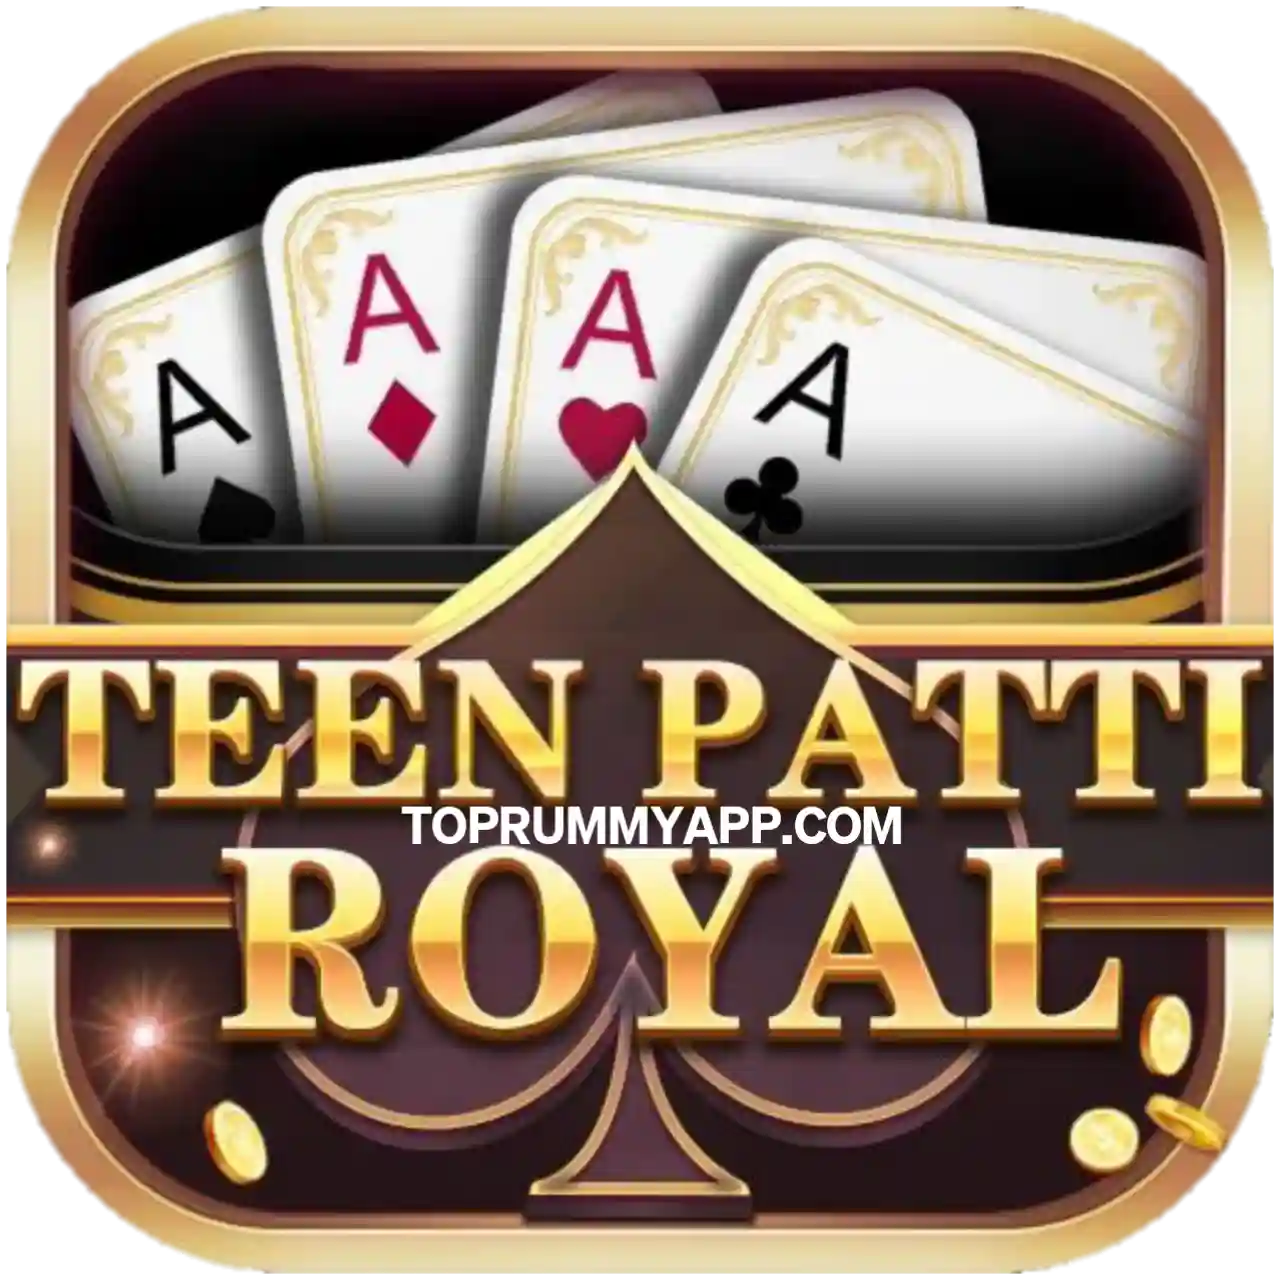 Teen Patti Royal Mod Apk Download - Top 20 Teen Patti App List